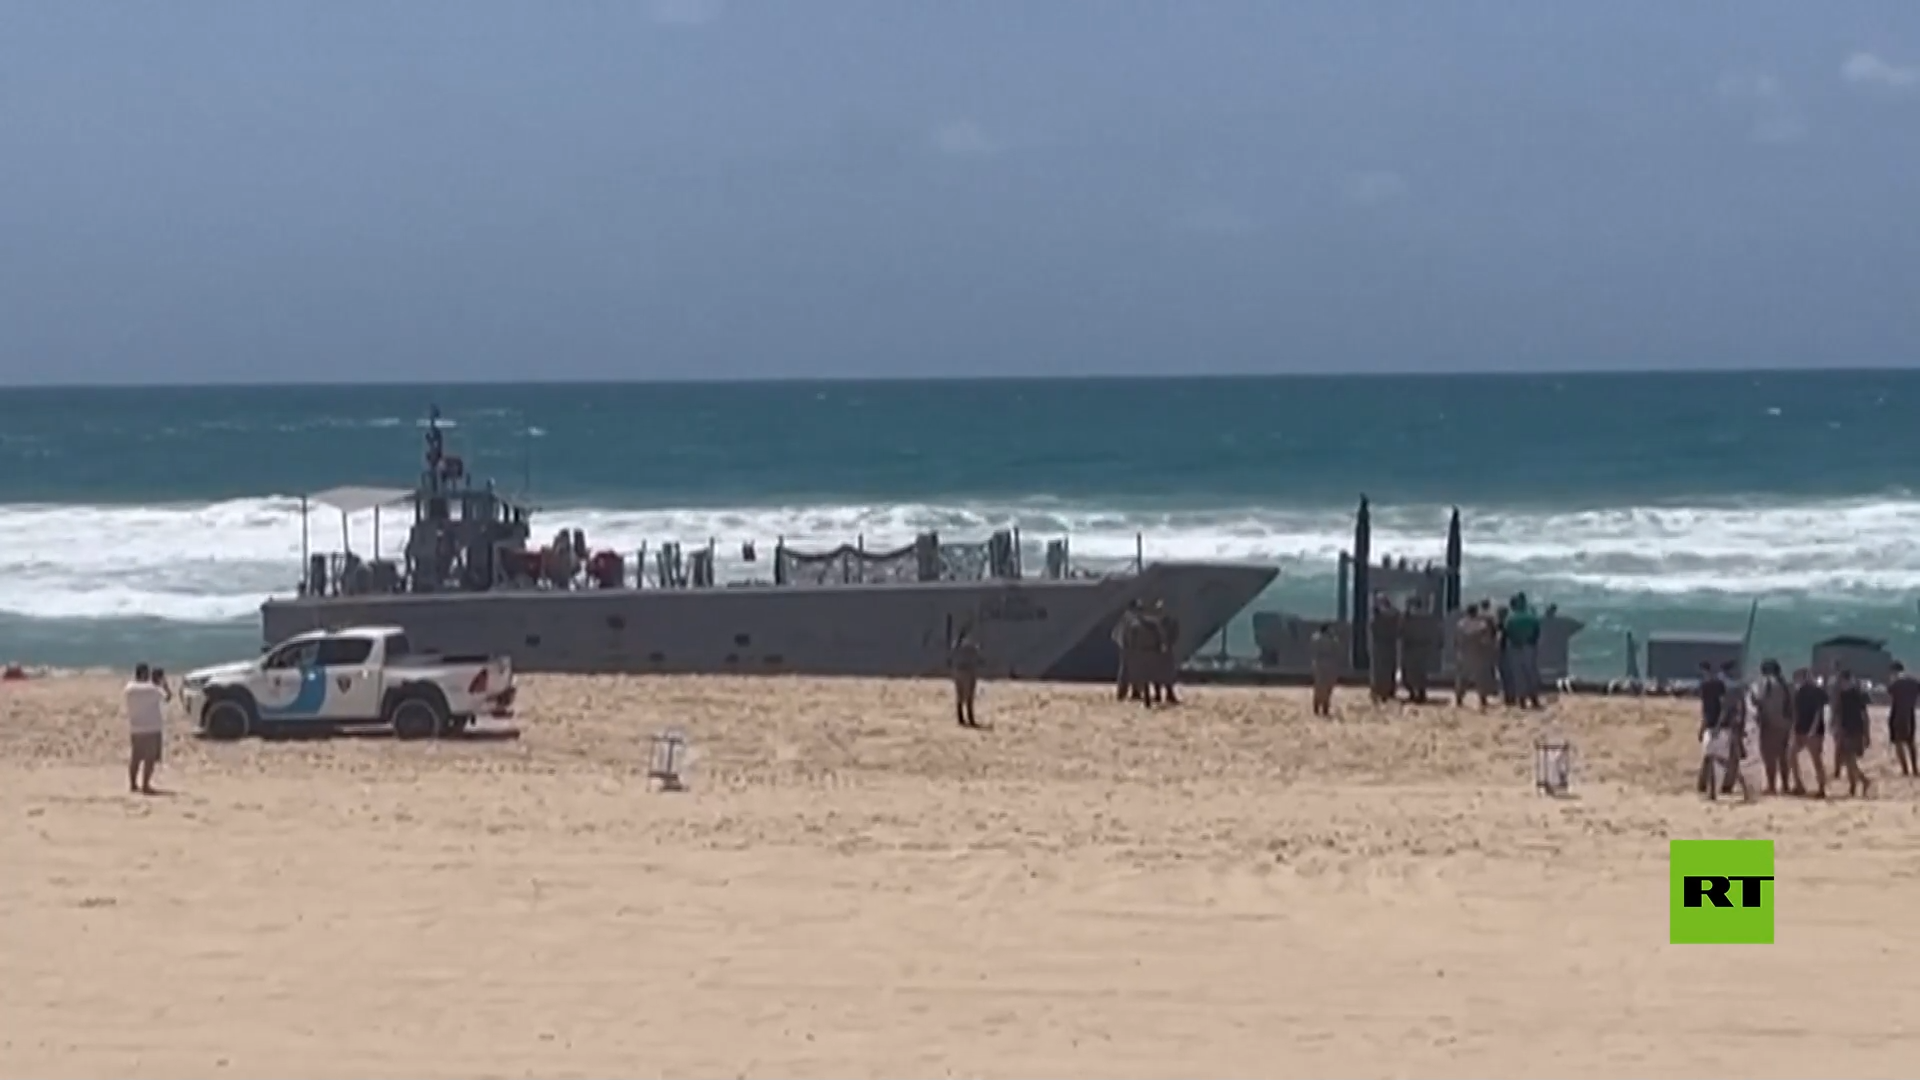 للمرة الثانية في أقل من شهر.. الرصيف الأمريكي العائم في شاطئ غزة يتمزق ويصل تل أبيب (فيديو)